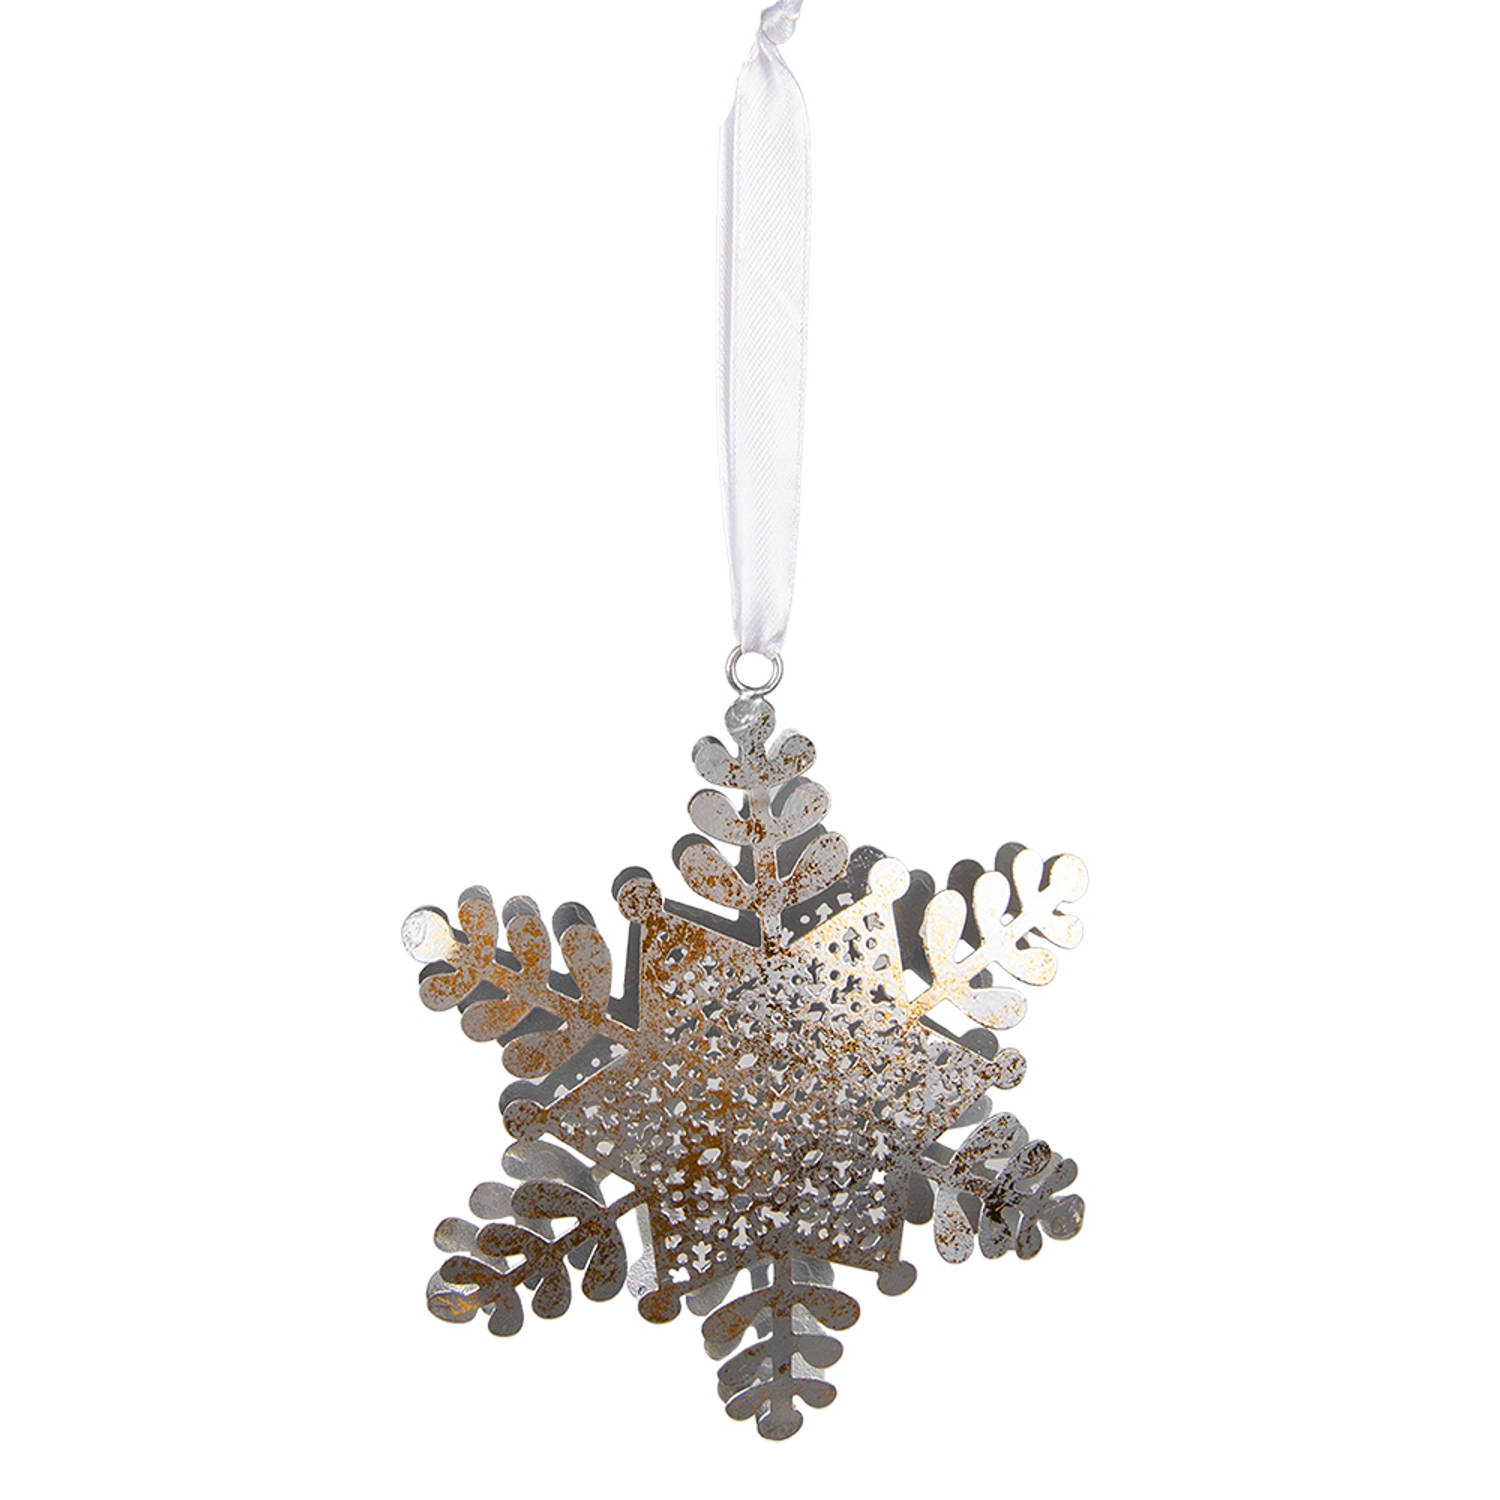 HAES DECO - Kersthanger Sneeuwvlok 13x2x16 cm - Zilverkleurig - Kerstdecoratie, Decoratie Hanger, Kerstboomversiering